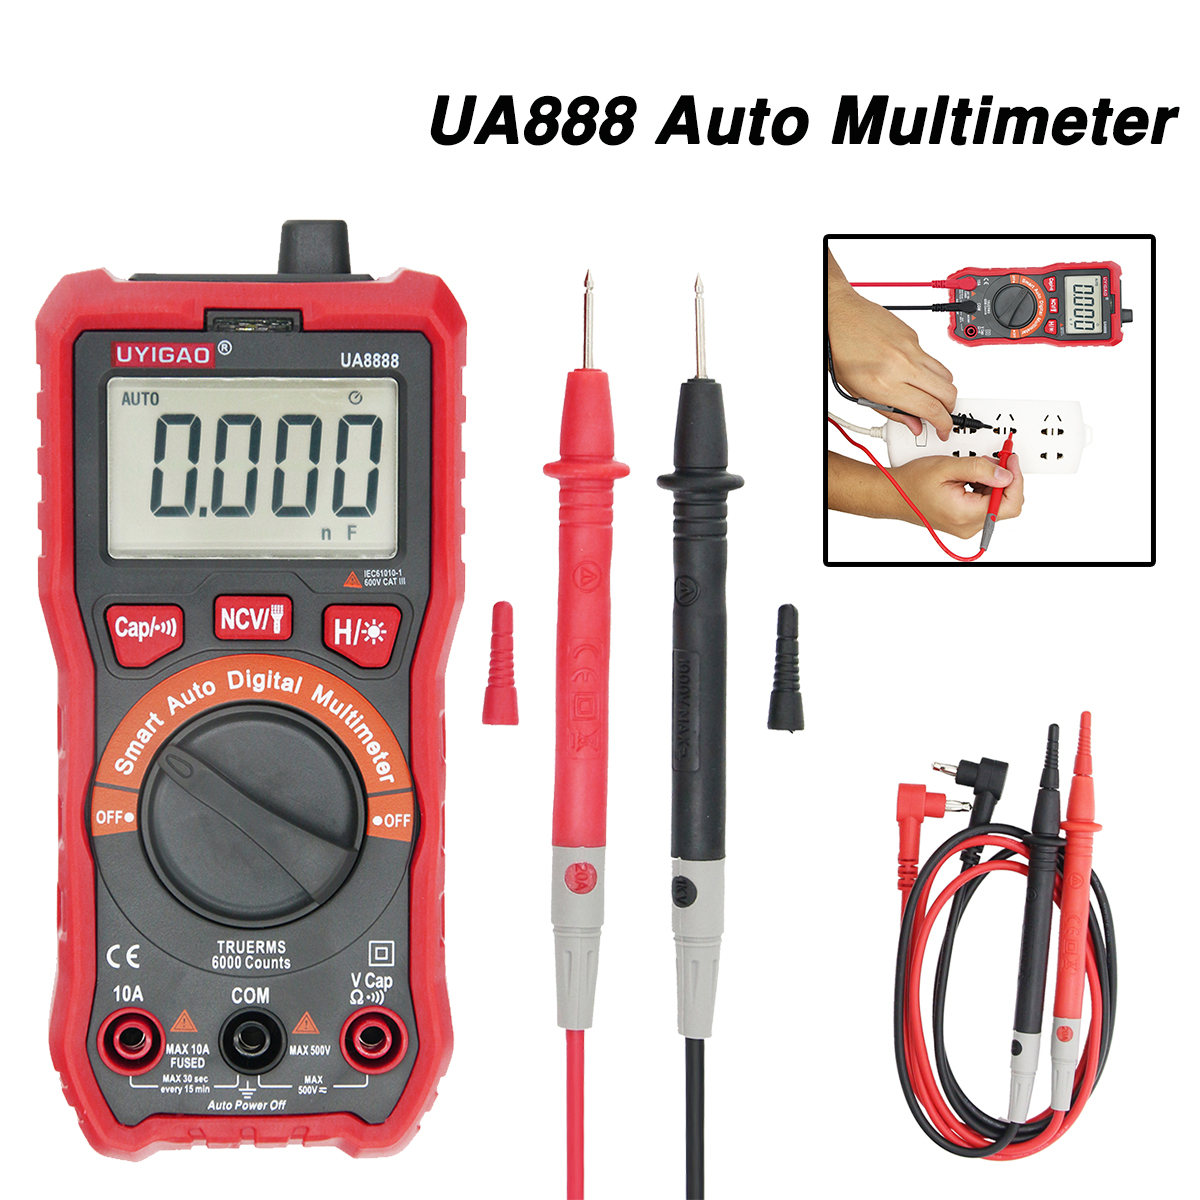 NEW UA888 Digital Multimeter NCV Auto Meters Handheld DC AC Voltage Meter 